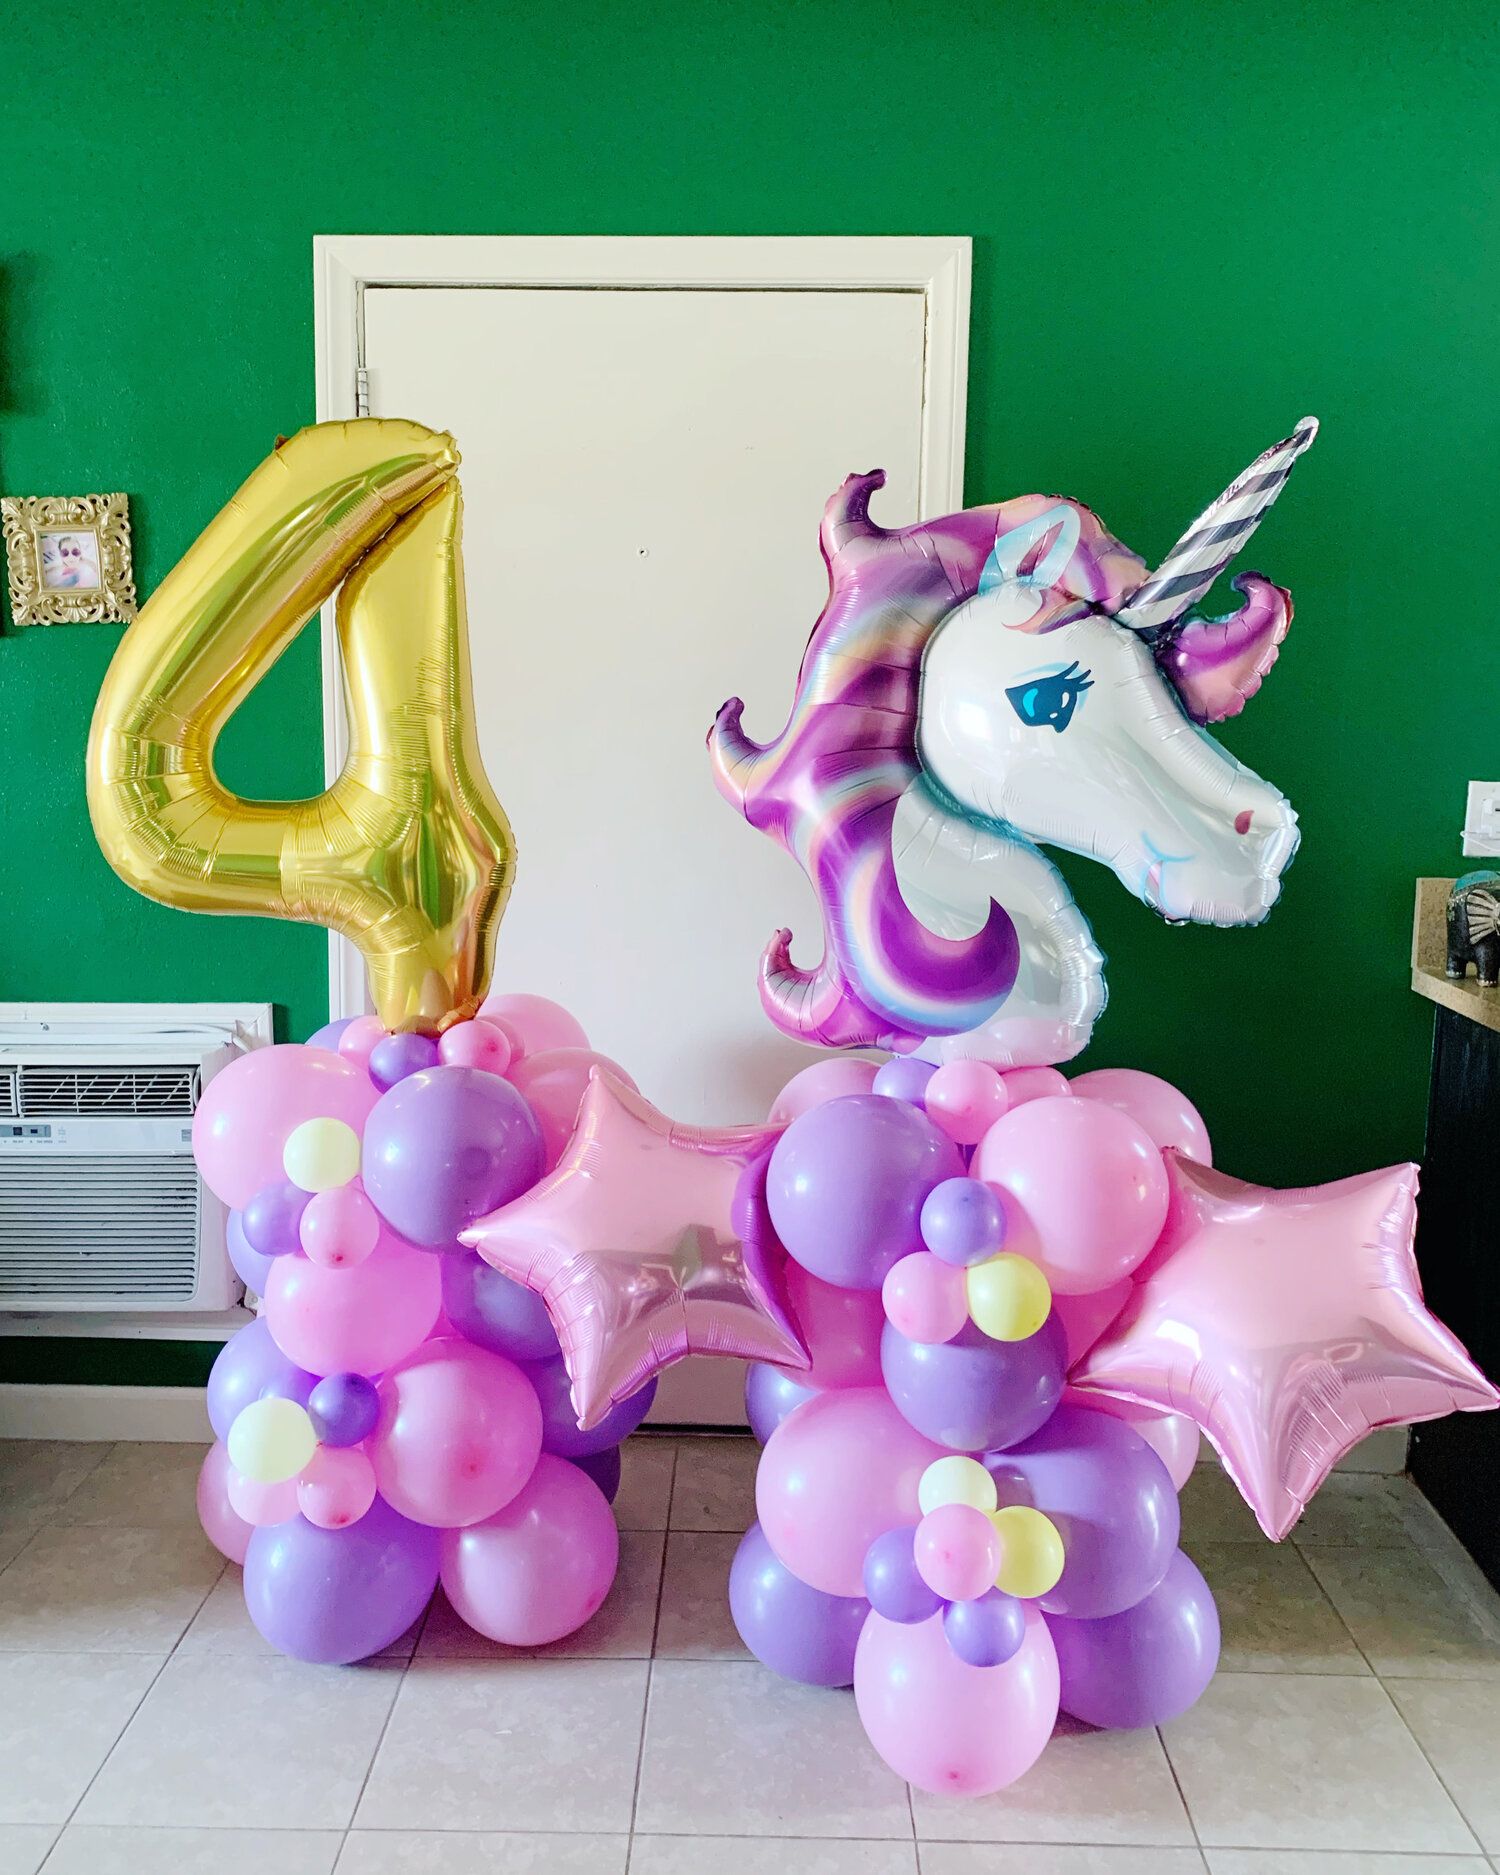 Bộ bong bóng Unicorn trang trí tiệc sinh nhật cho bé upkp52